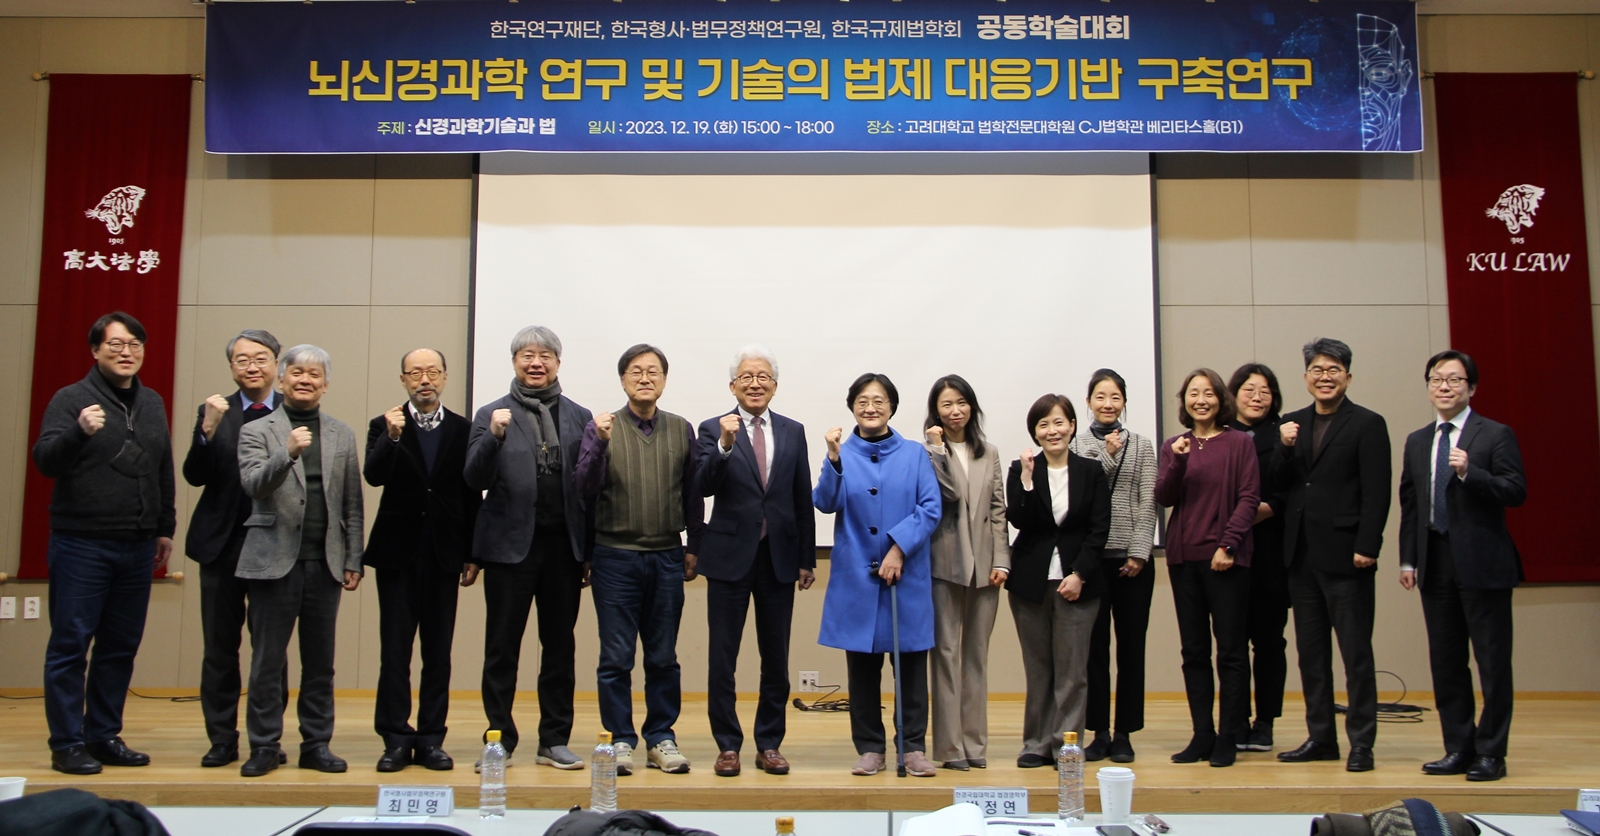 한국형사·법무정책연구원 – 한국규제법학회 공동학술행사 개최 사진1